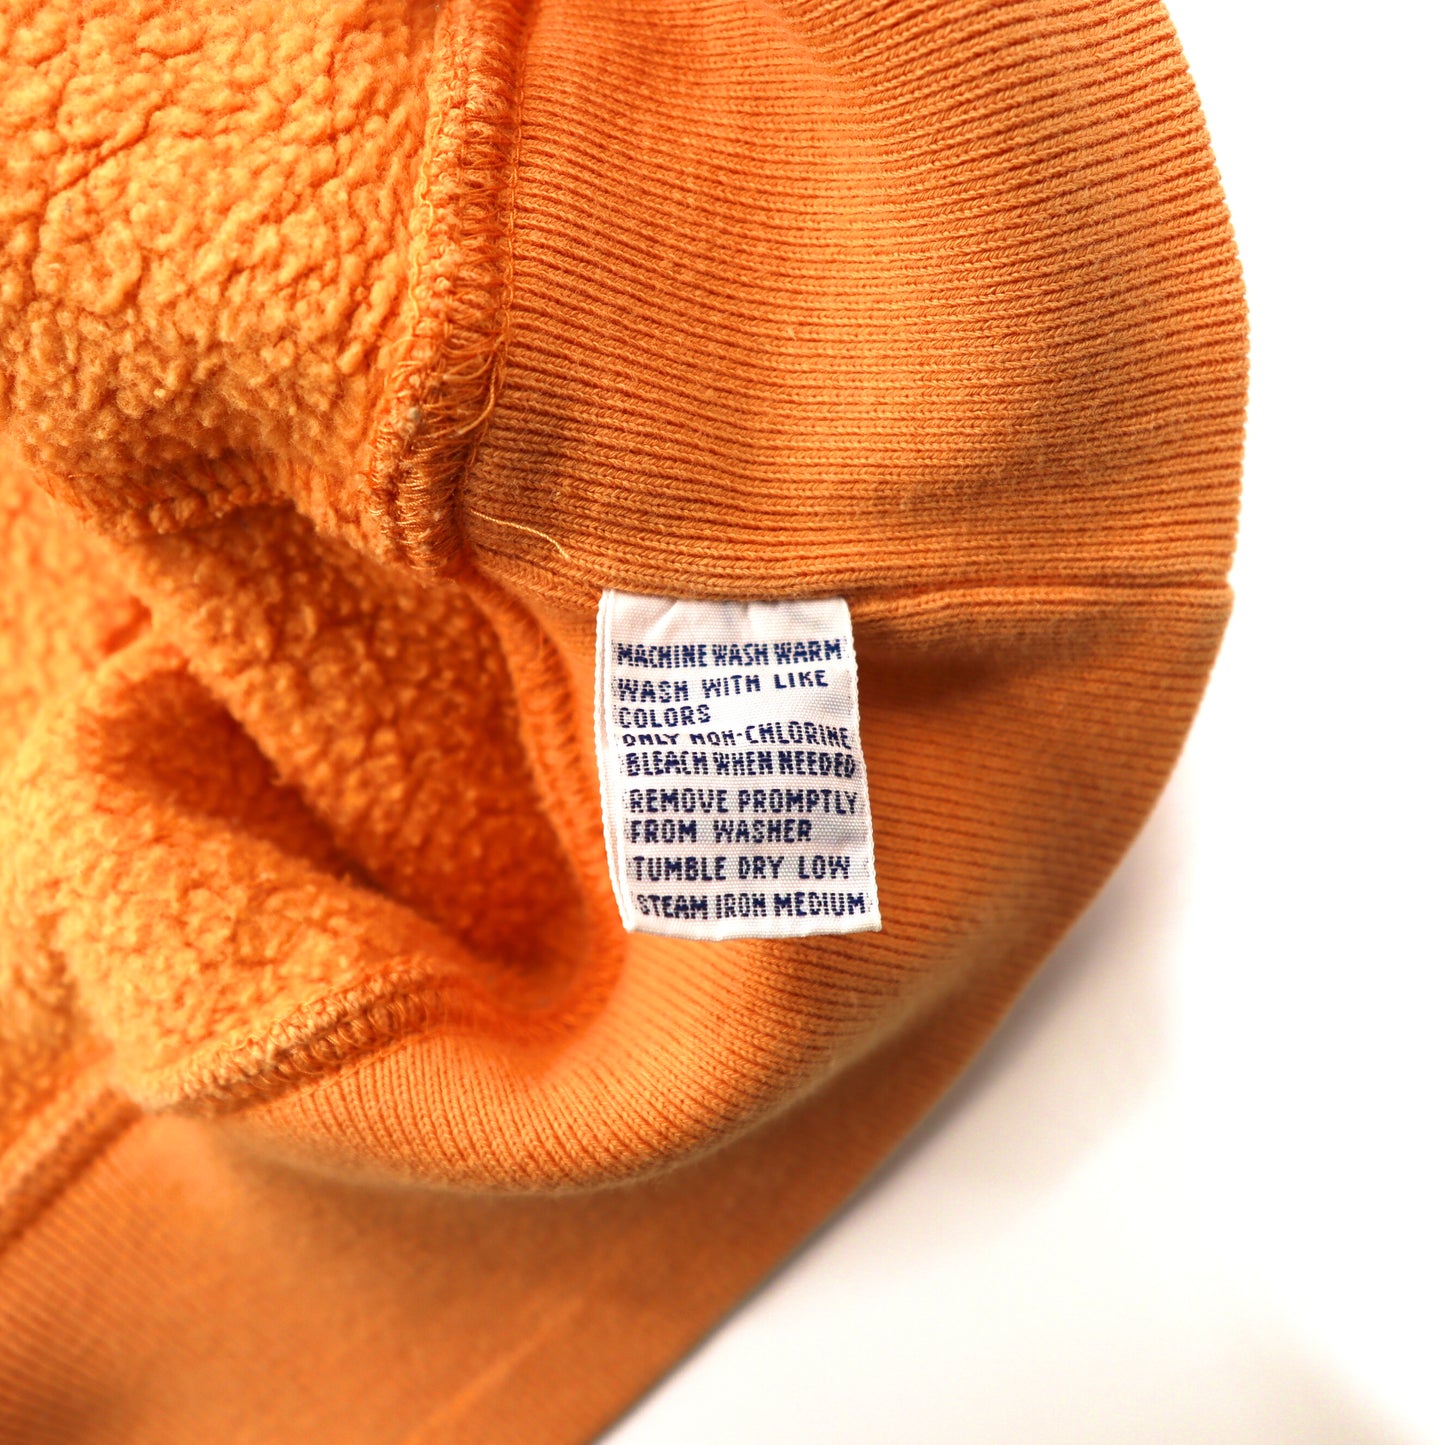 Polo by Ralph Lauren クルーネックスウェット XXL オレンジ コットン 裏起毛 ビッグサイズ スモールポニー刺繍